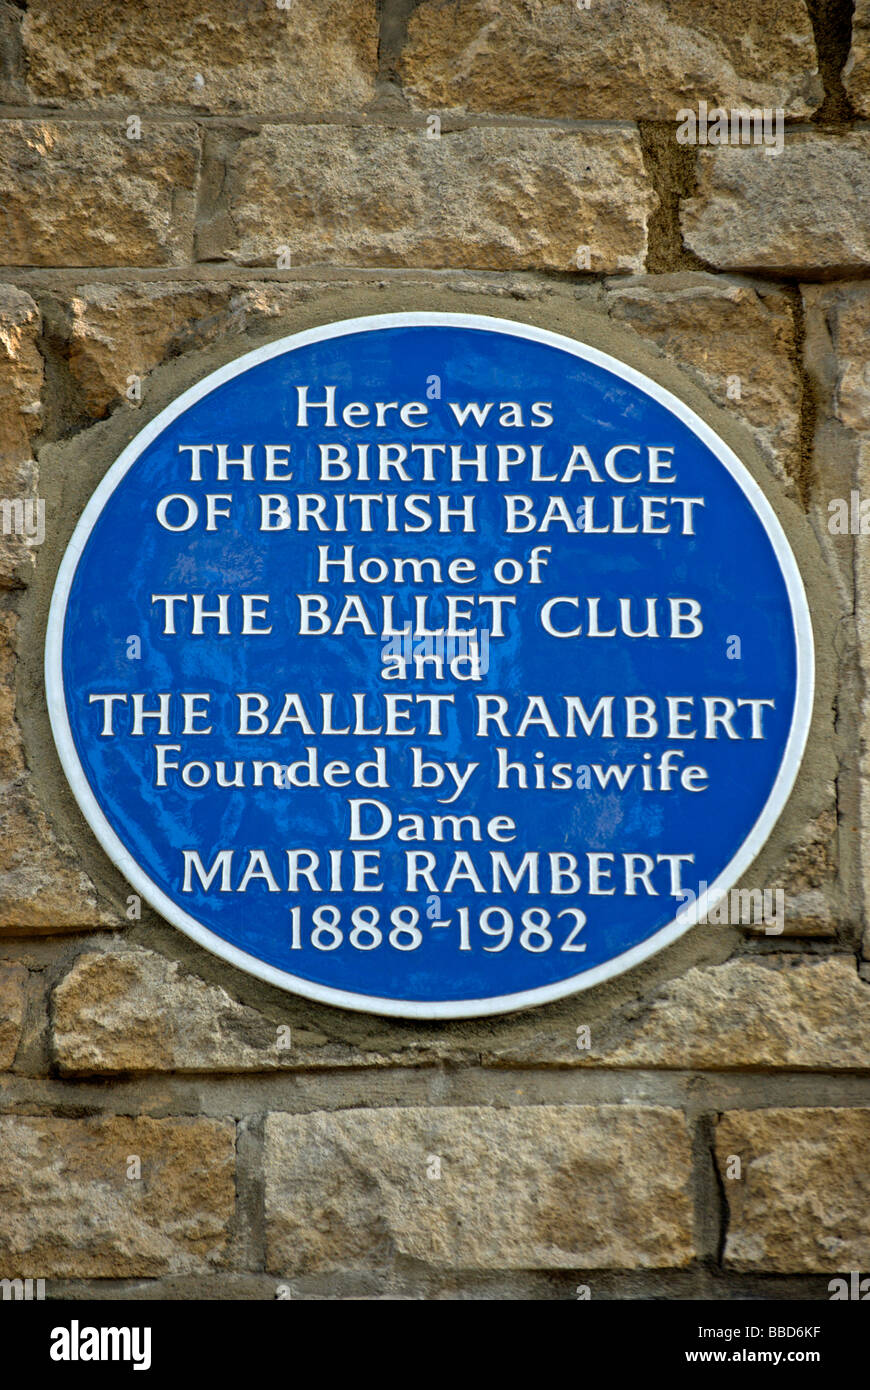 Placa azul en el sitio del club de ballet y el ballet rambert, hogar del ballet británico, en Notting Hill, al oeste de Londres, Inglaterra Foto de stock